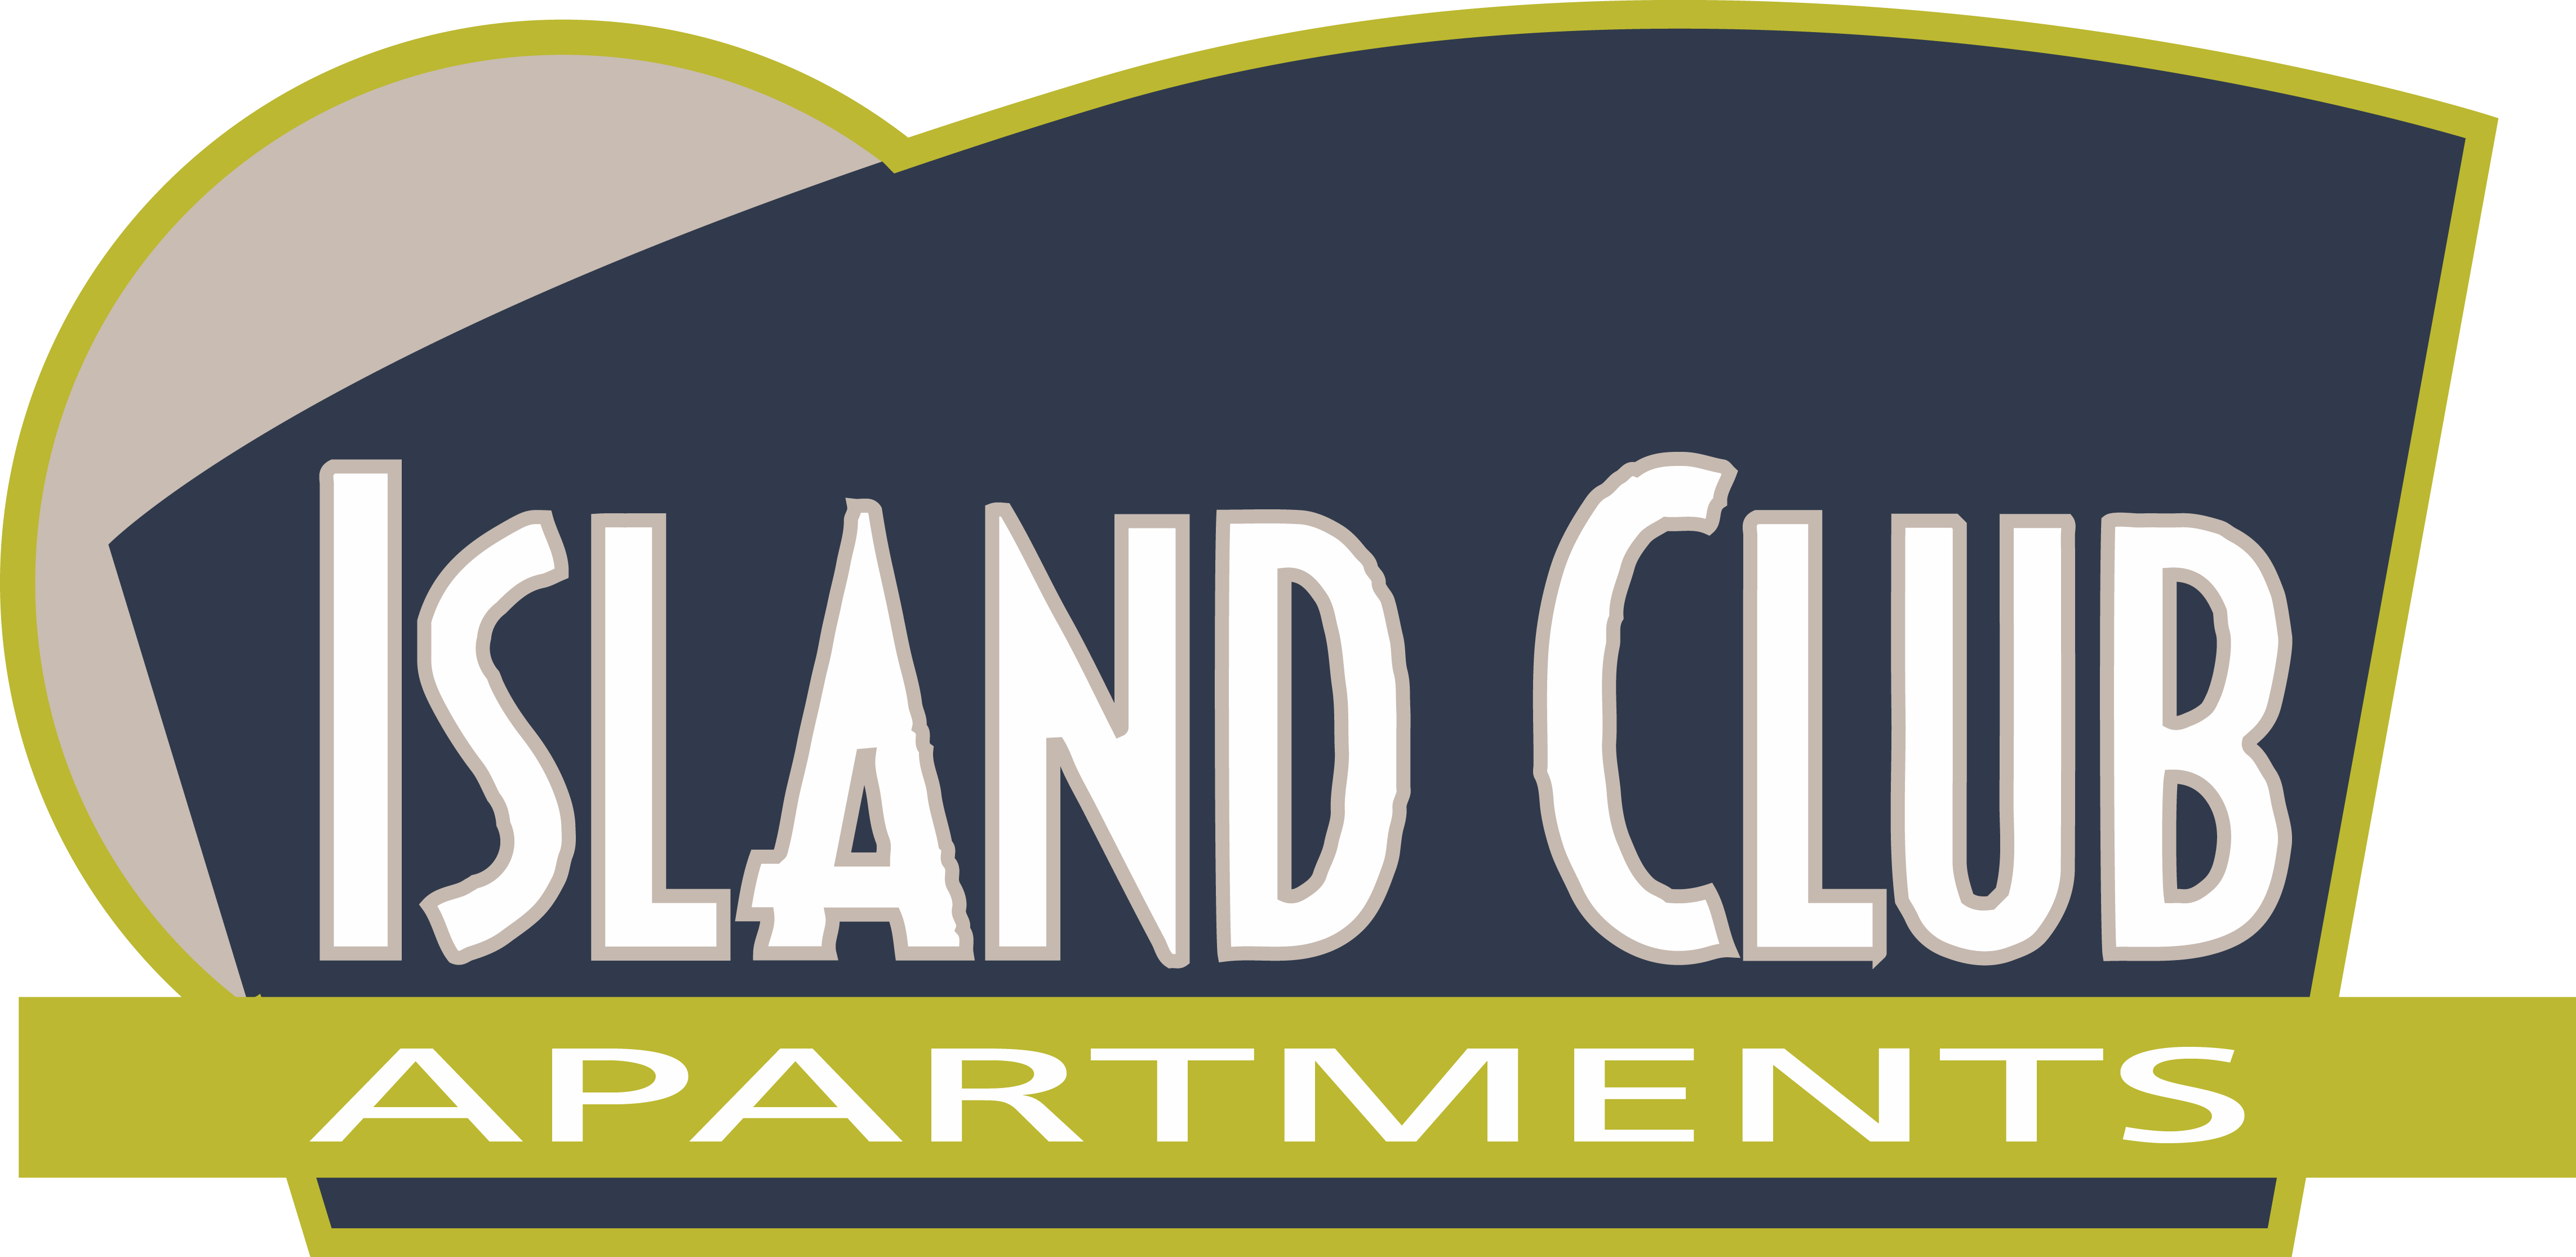 Island Club